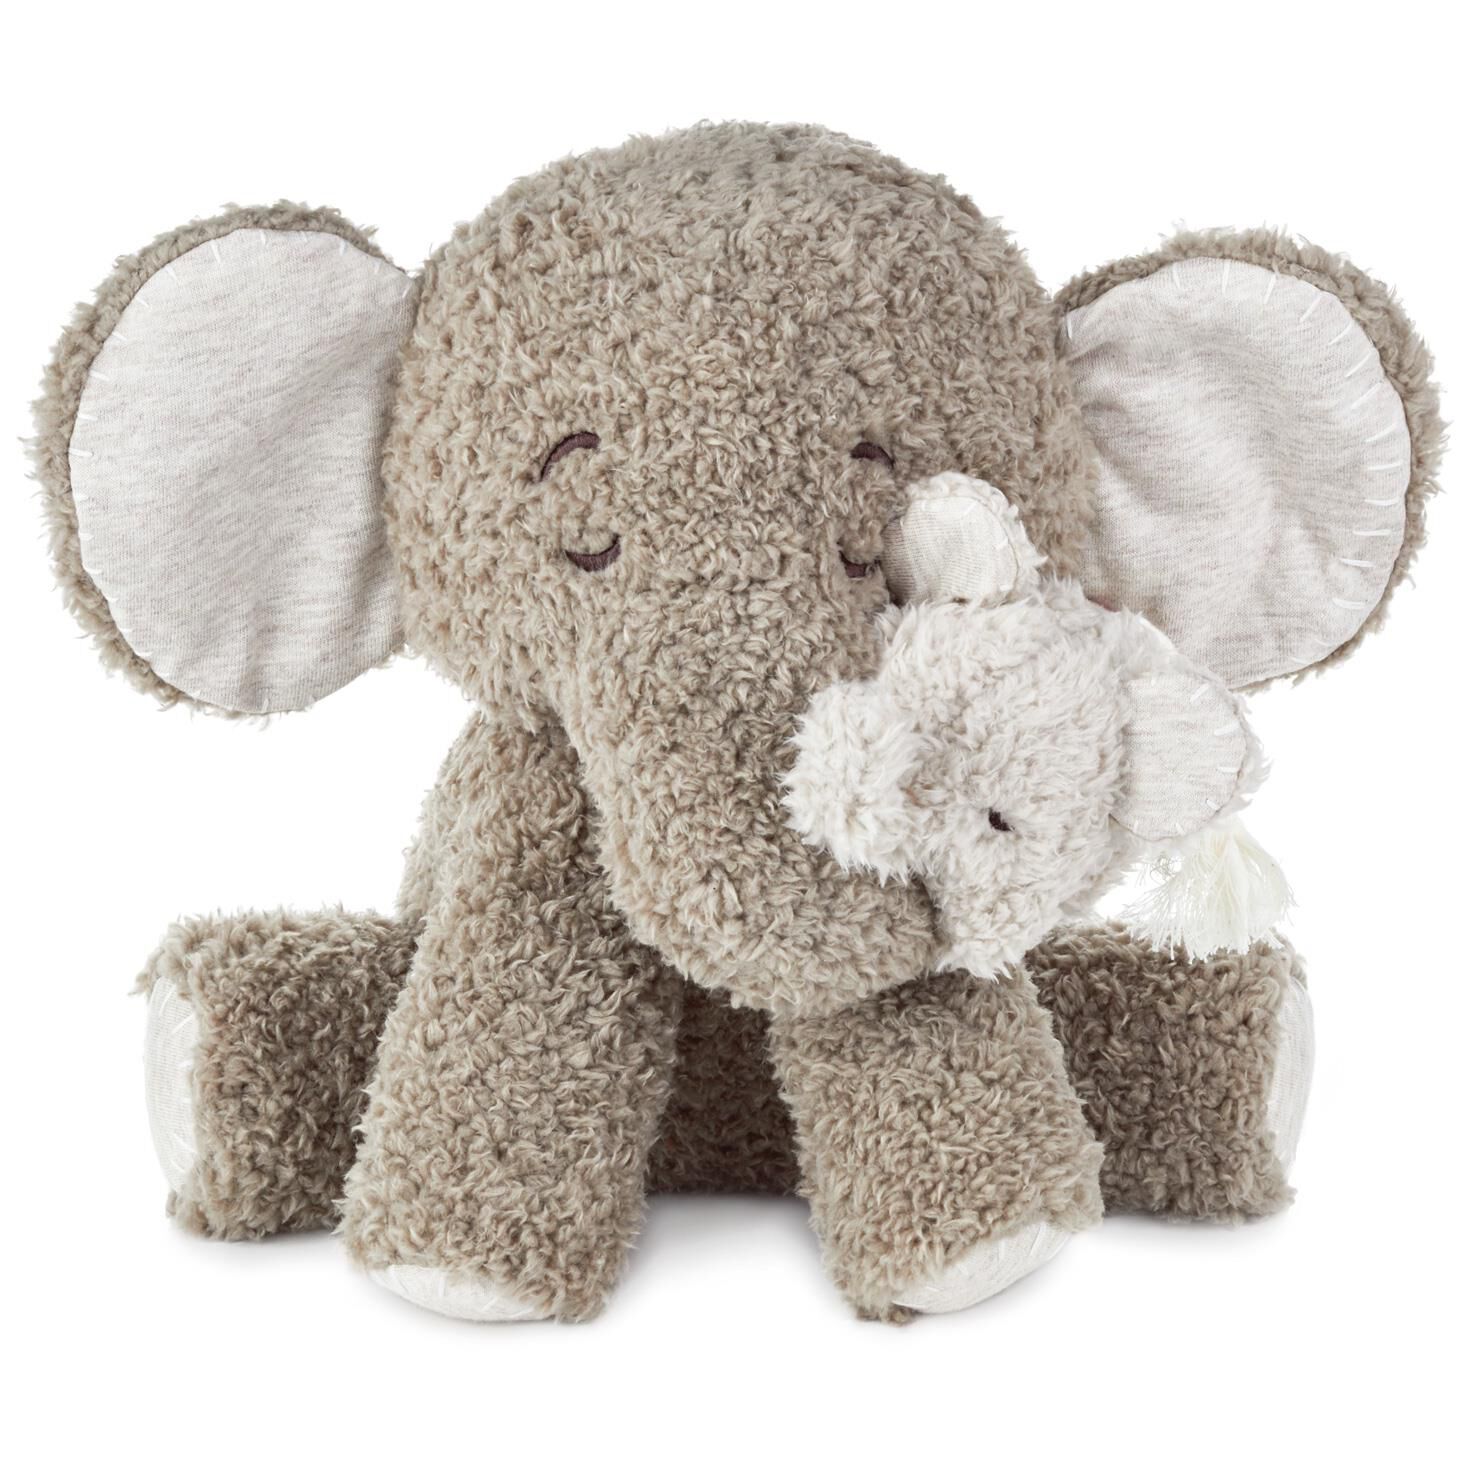 stuffed elephant